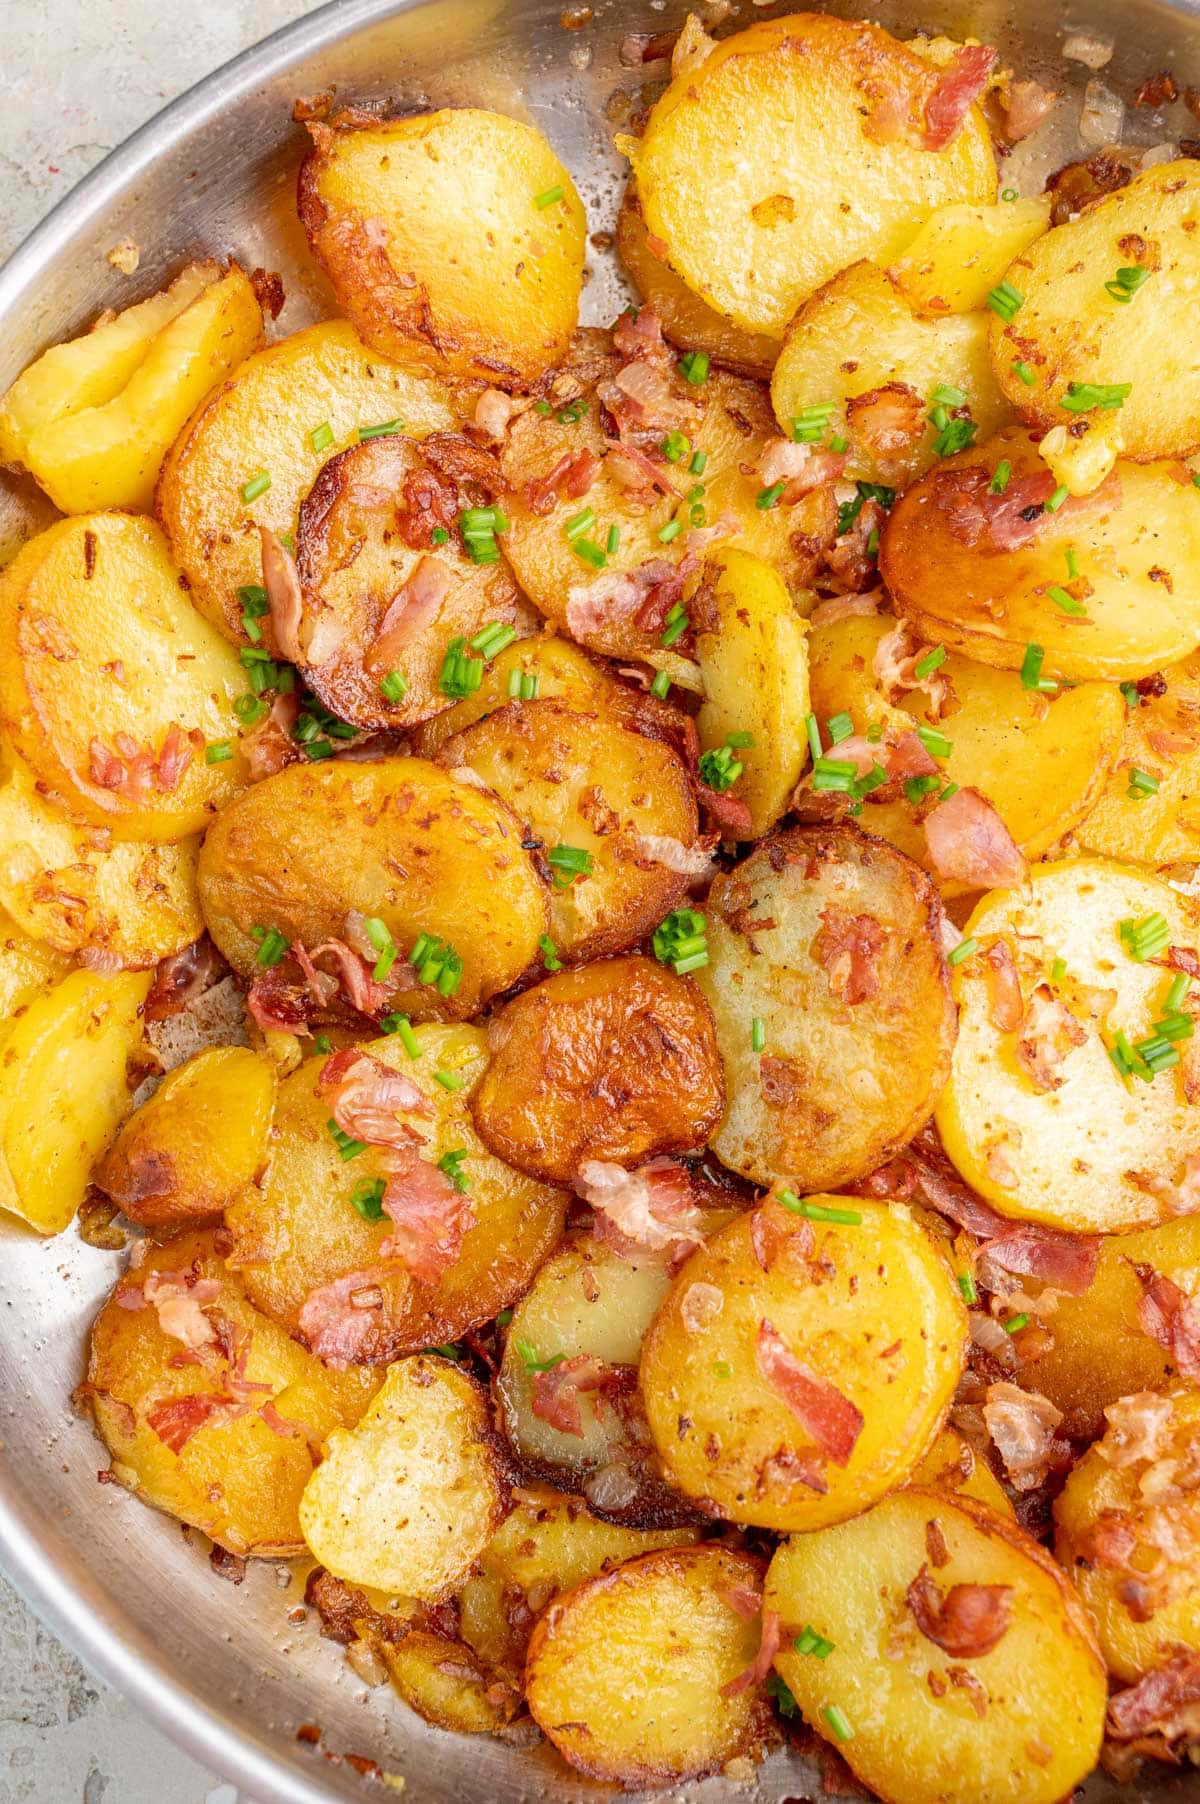 Bratkartoffeln in a frying pan.